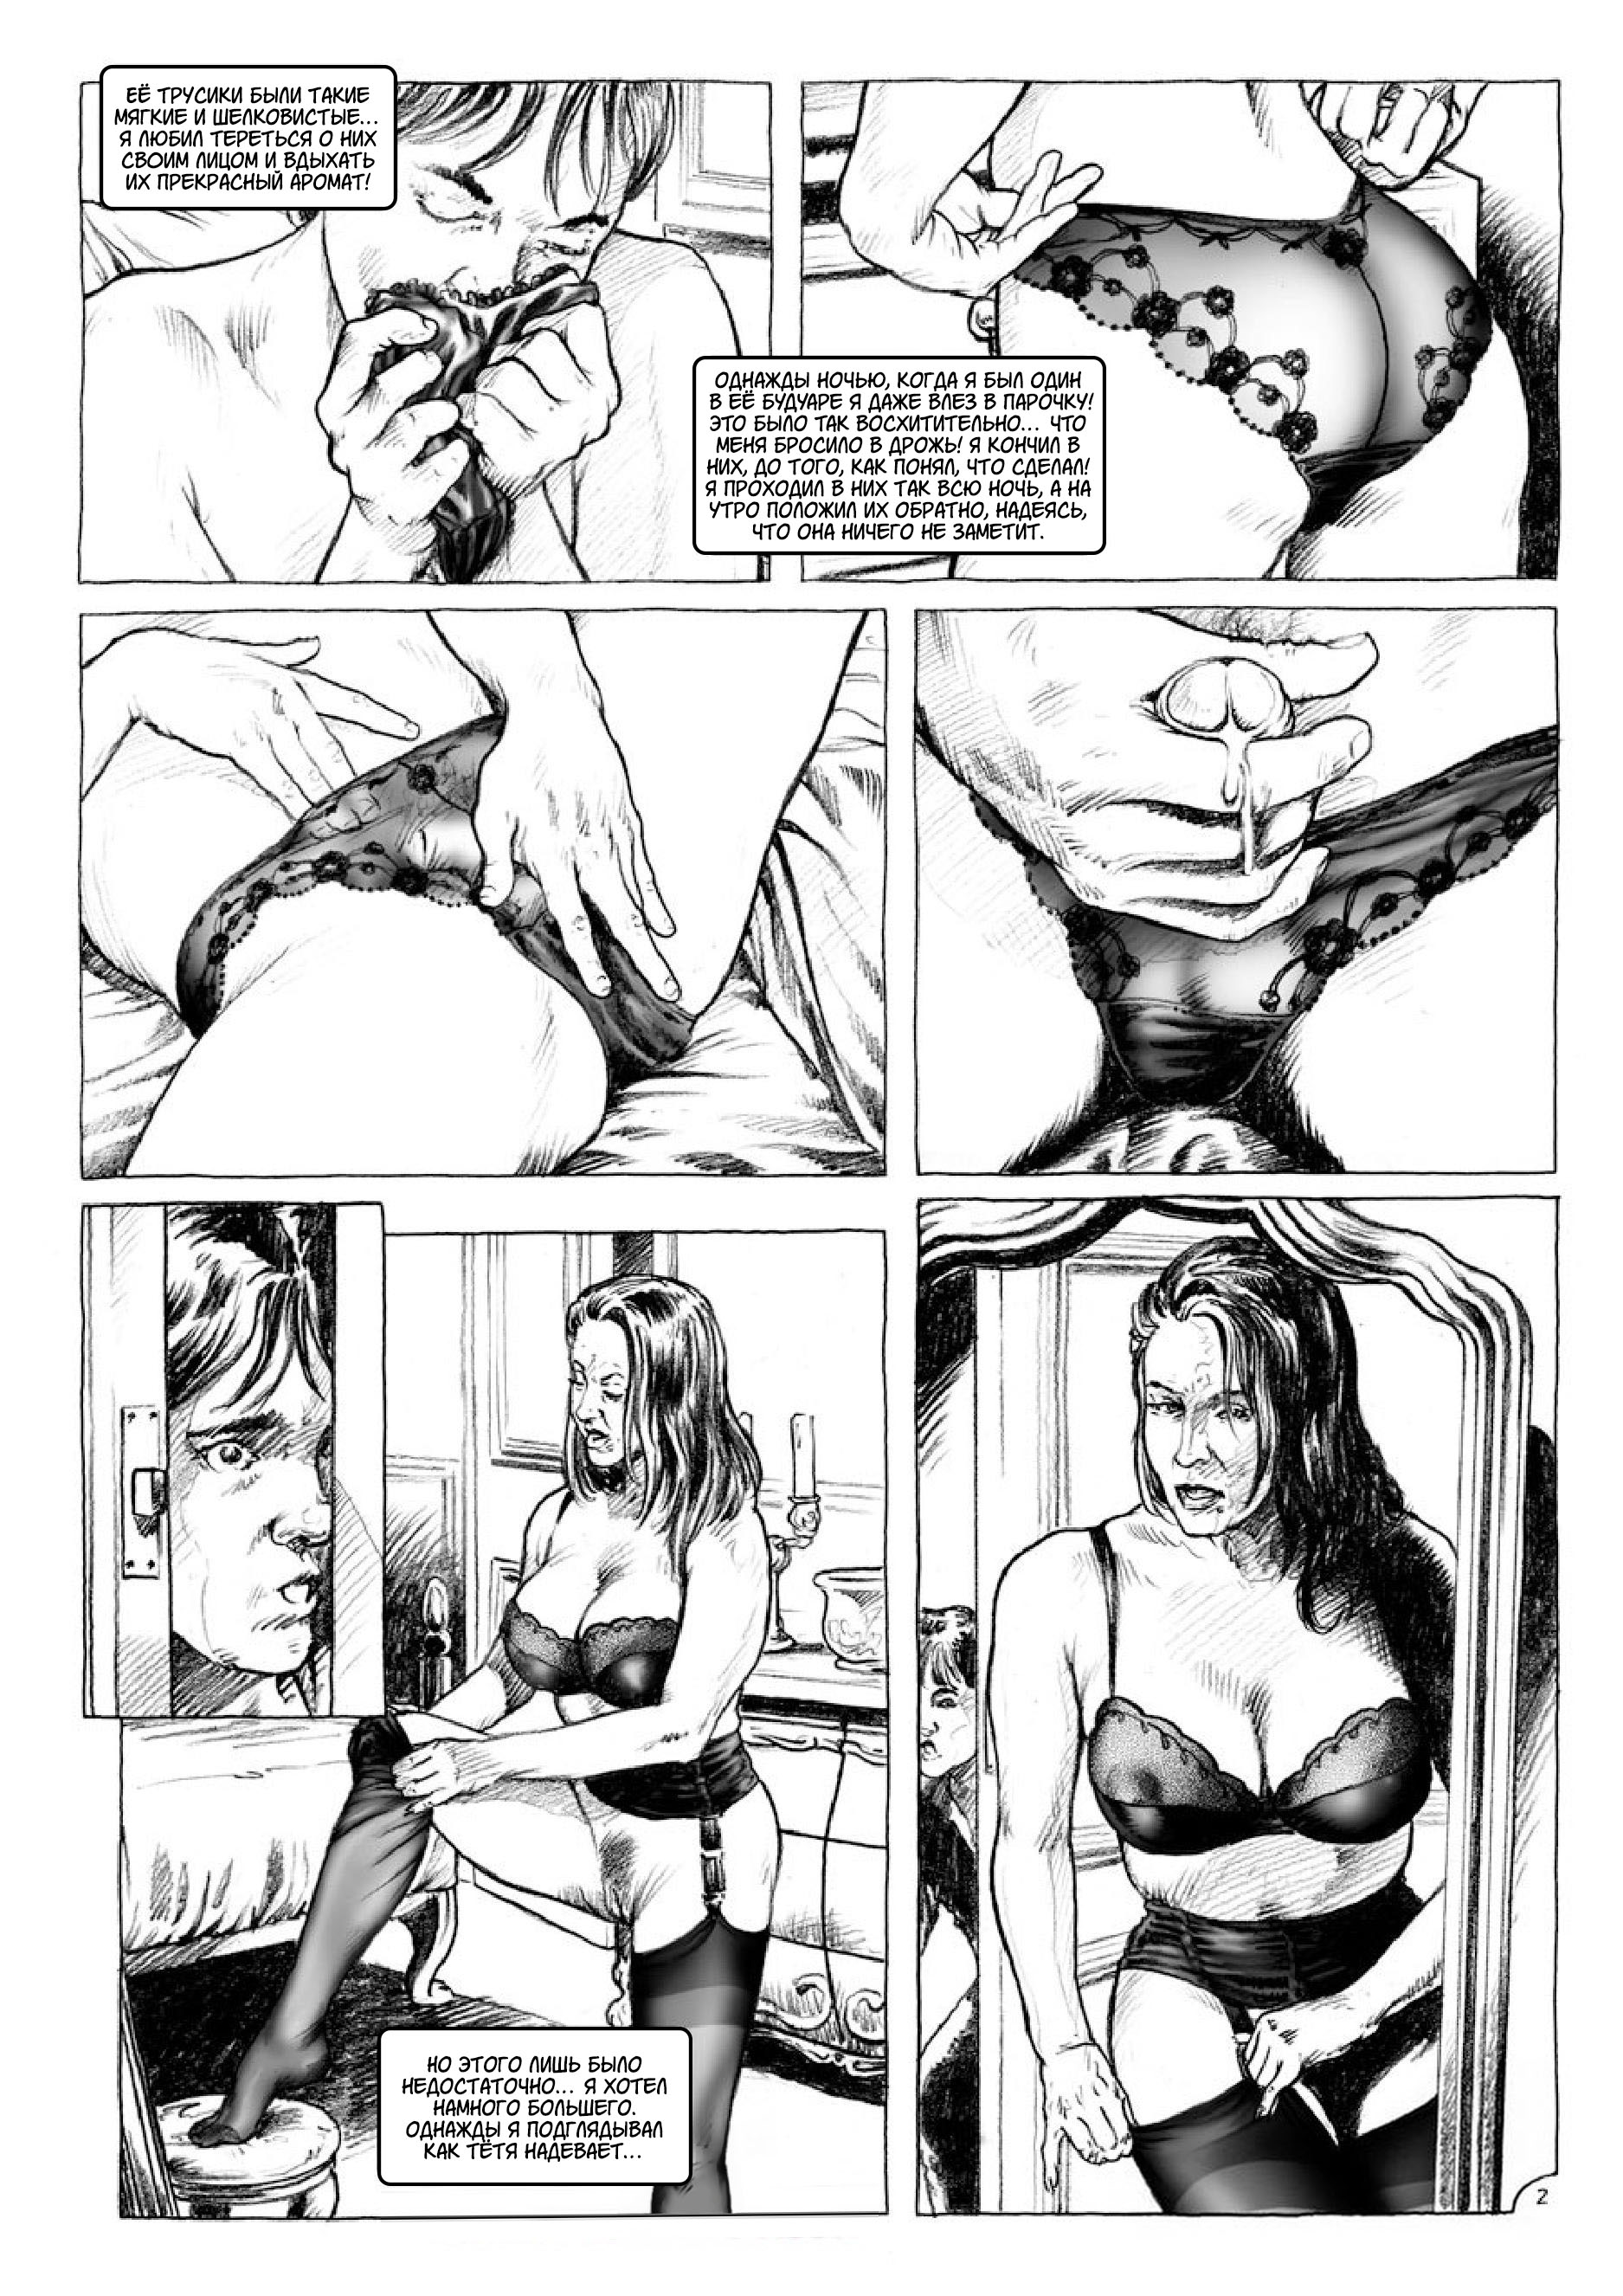 Порно комиксы феминизации фото 37